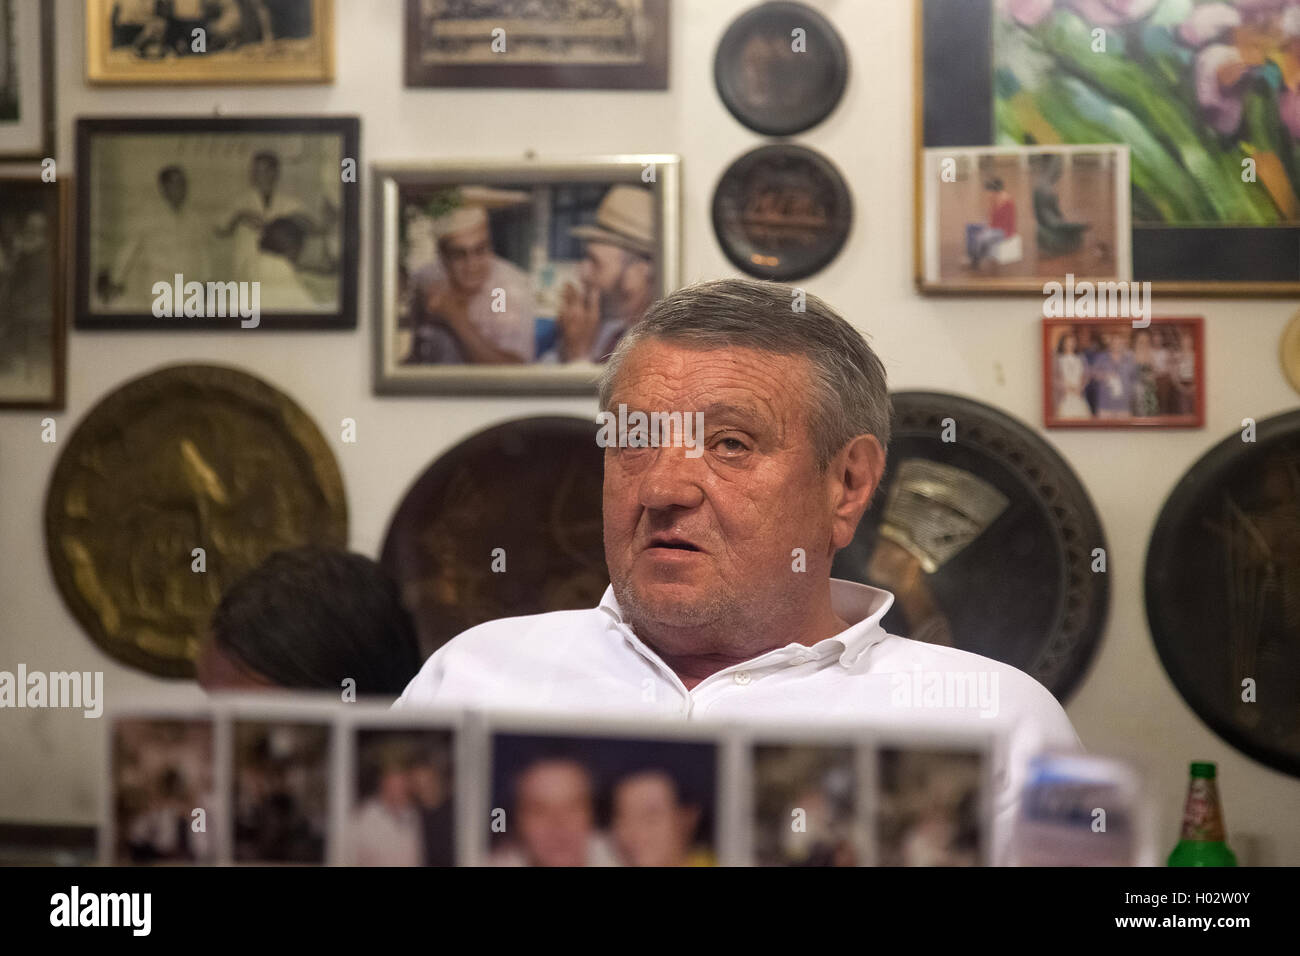 DUBROVNIK, Croazia - 28 Maggio 2014: Hrvoje CIKATO, proprietario della tradizionale barbiere Cikato seduto in poltrona. La gente del posto spesso com Foto Stock